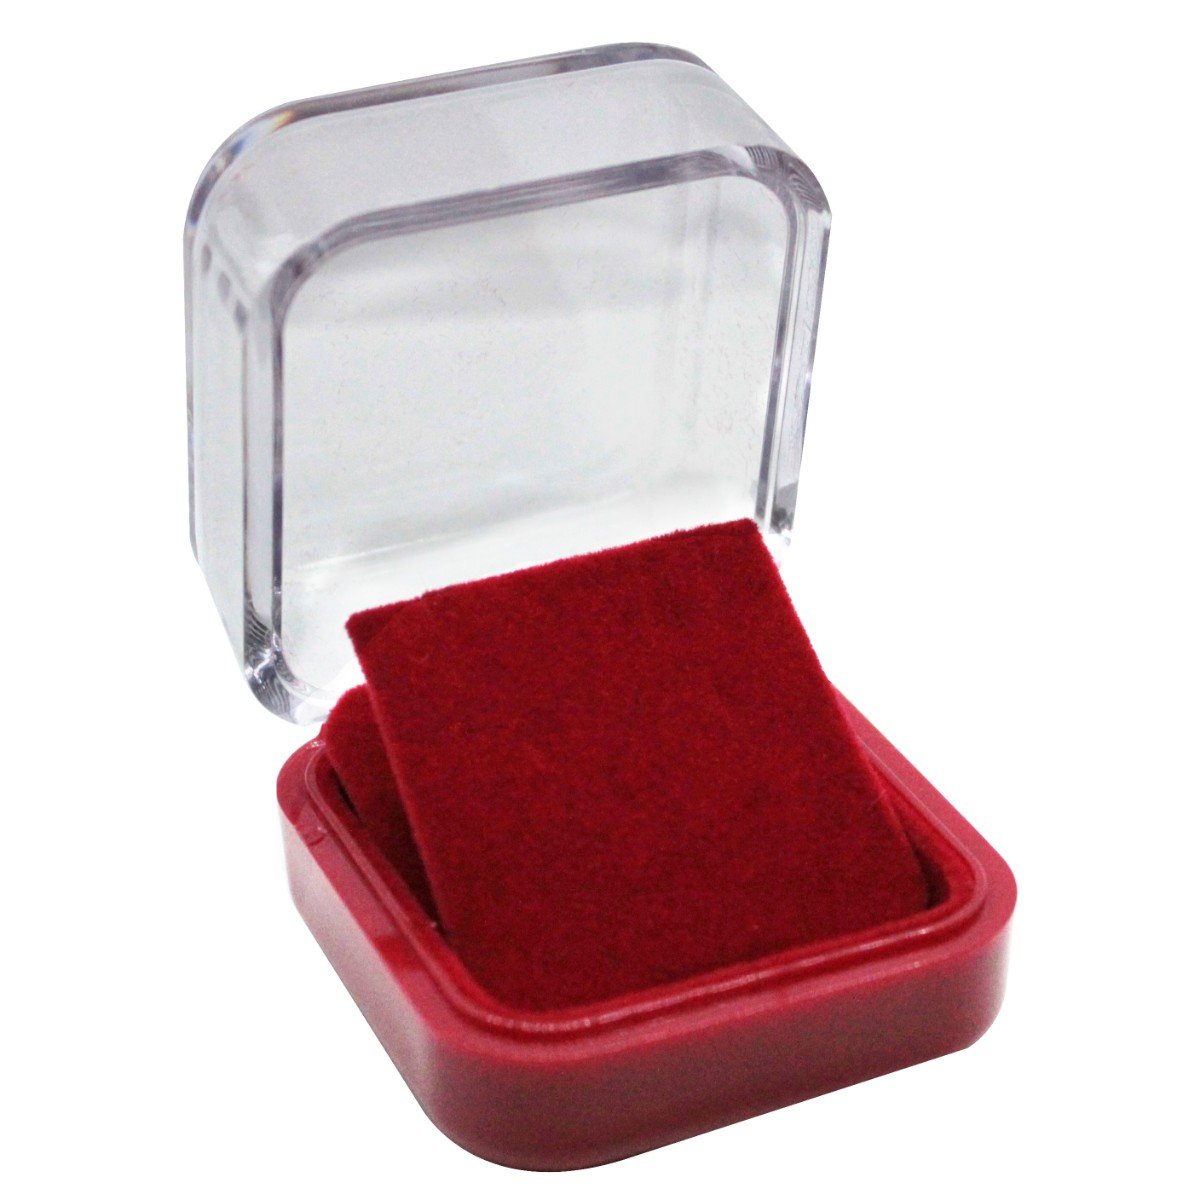 Embalagem acrílica vermelha para brincos ou conjuntos